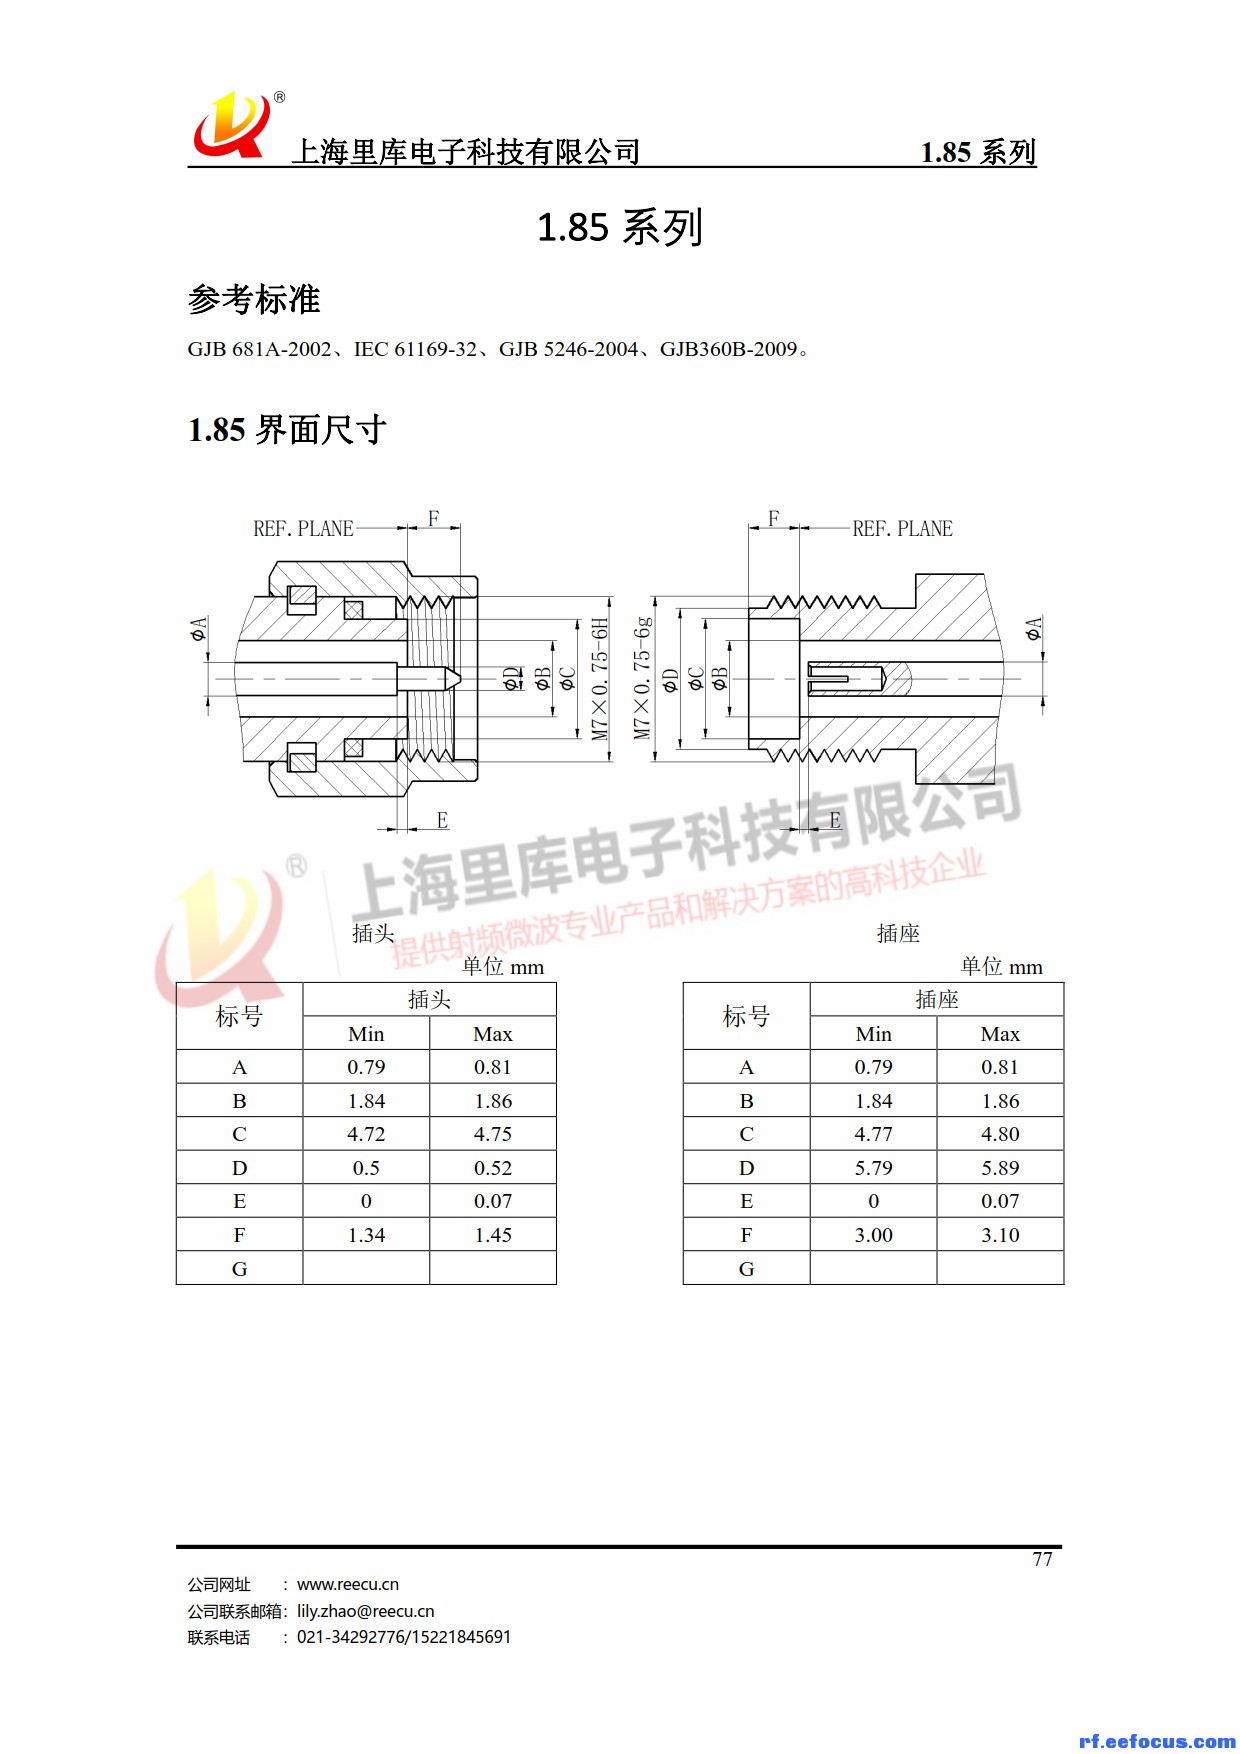 连接器产品手册-里库电子_77.jpg